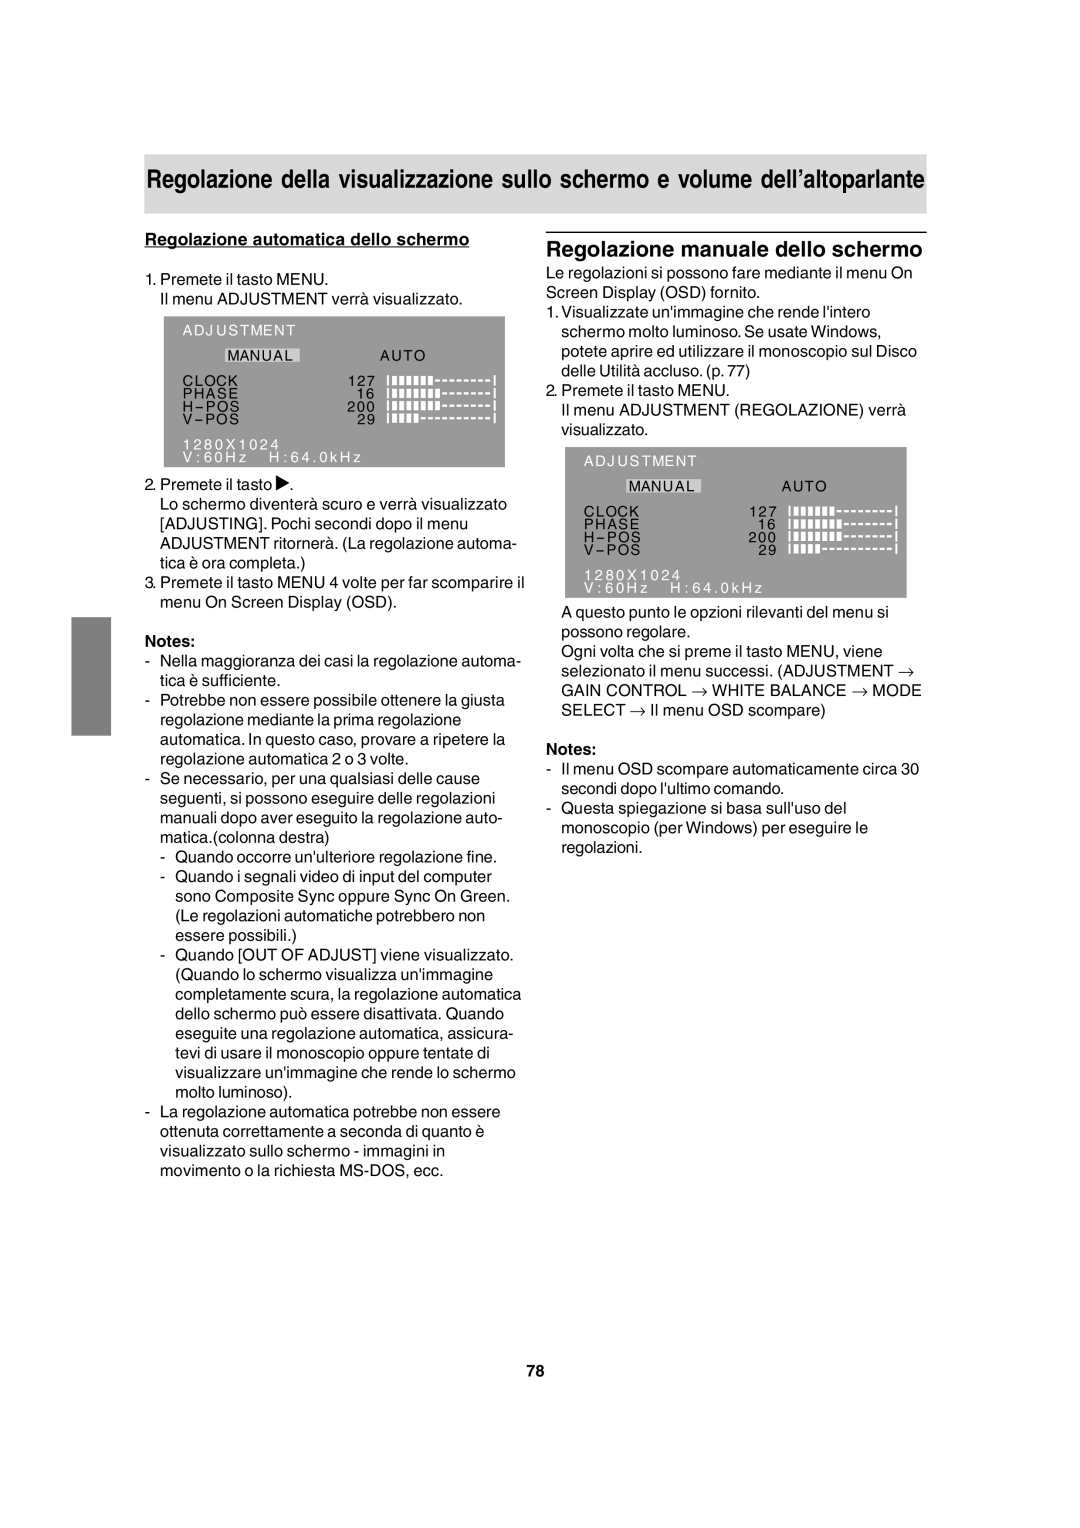 Sharp LL-T17A3 operation manual Regolazione manuale dello schermo, Regolazione automatica dello schermo 